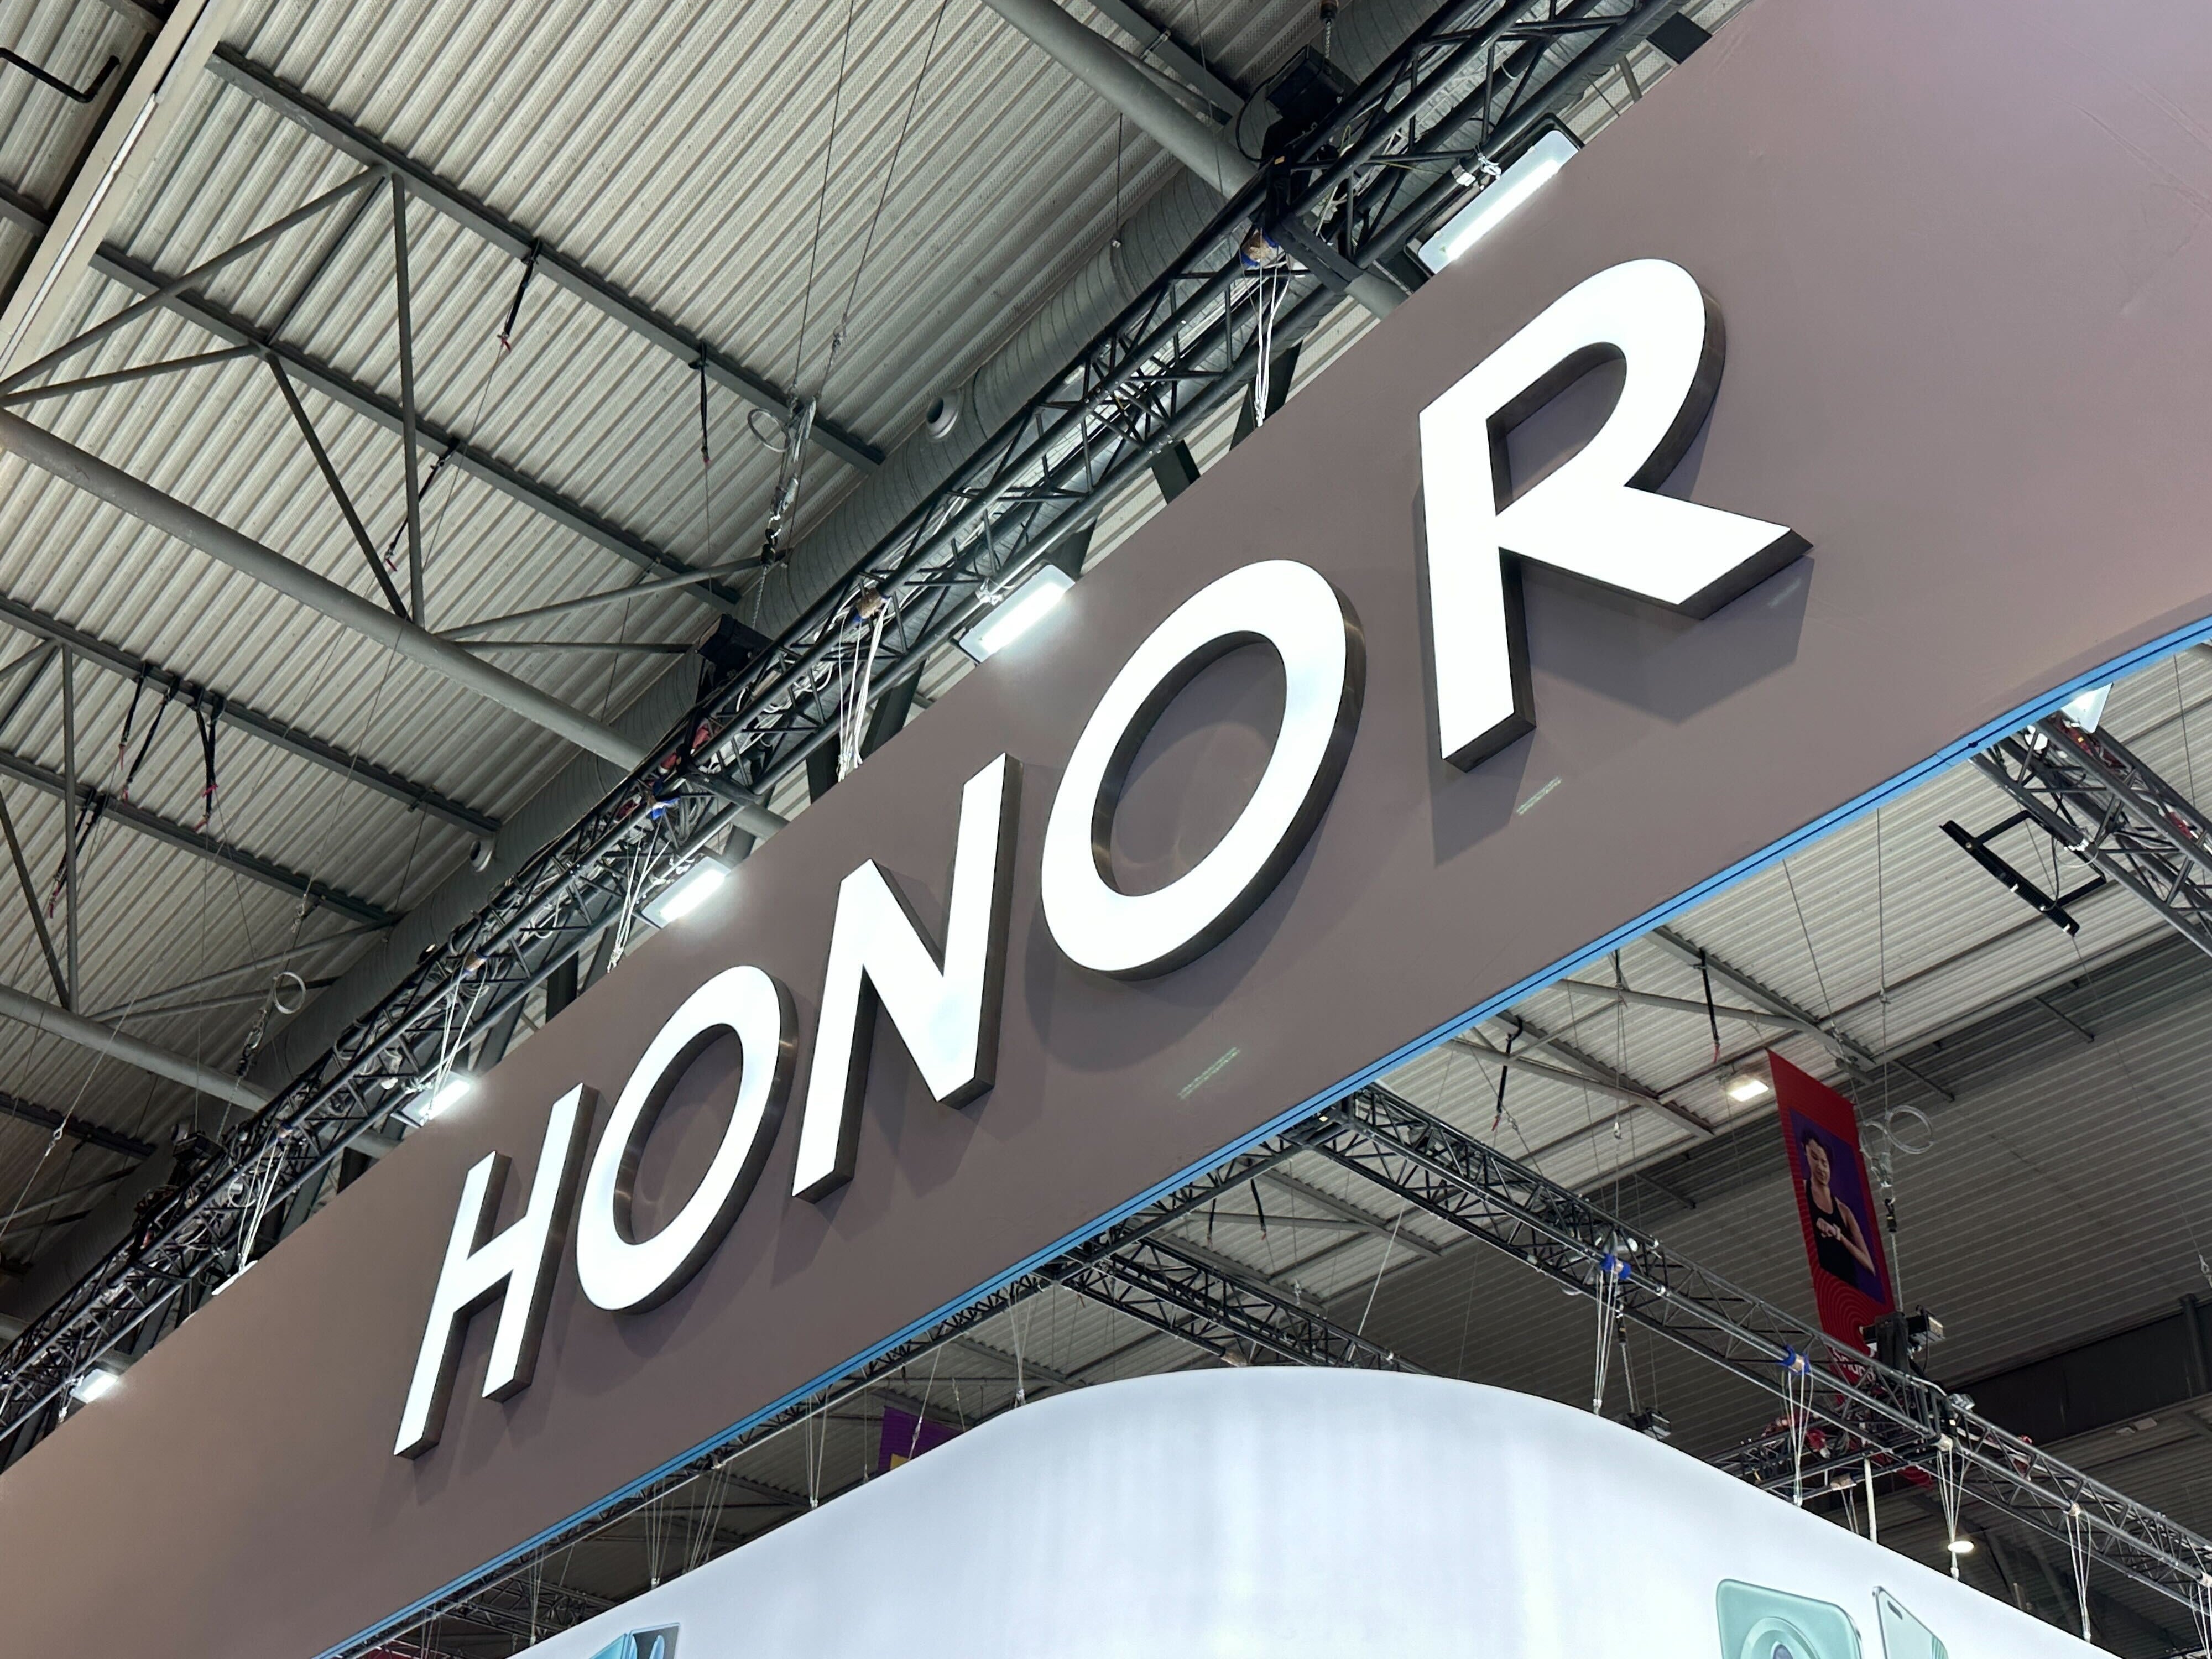 #Honor auf dem MWC: Das traut sich kein anderer Hersteller